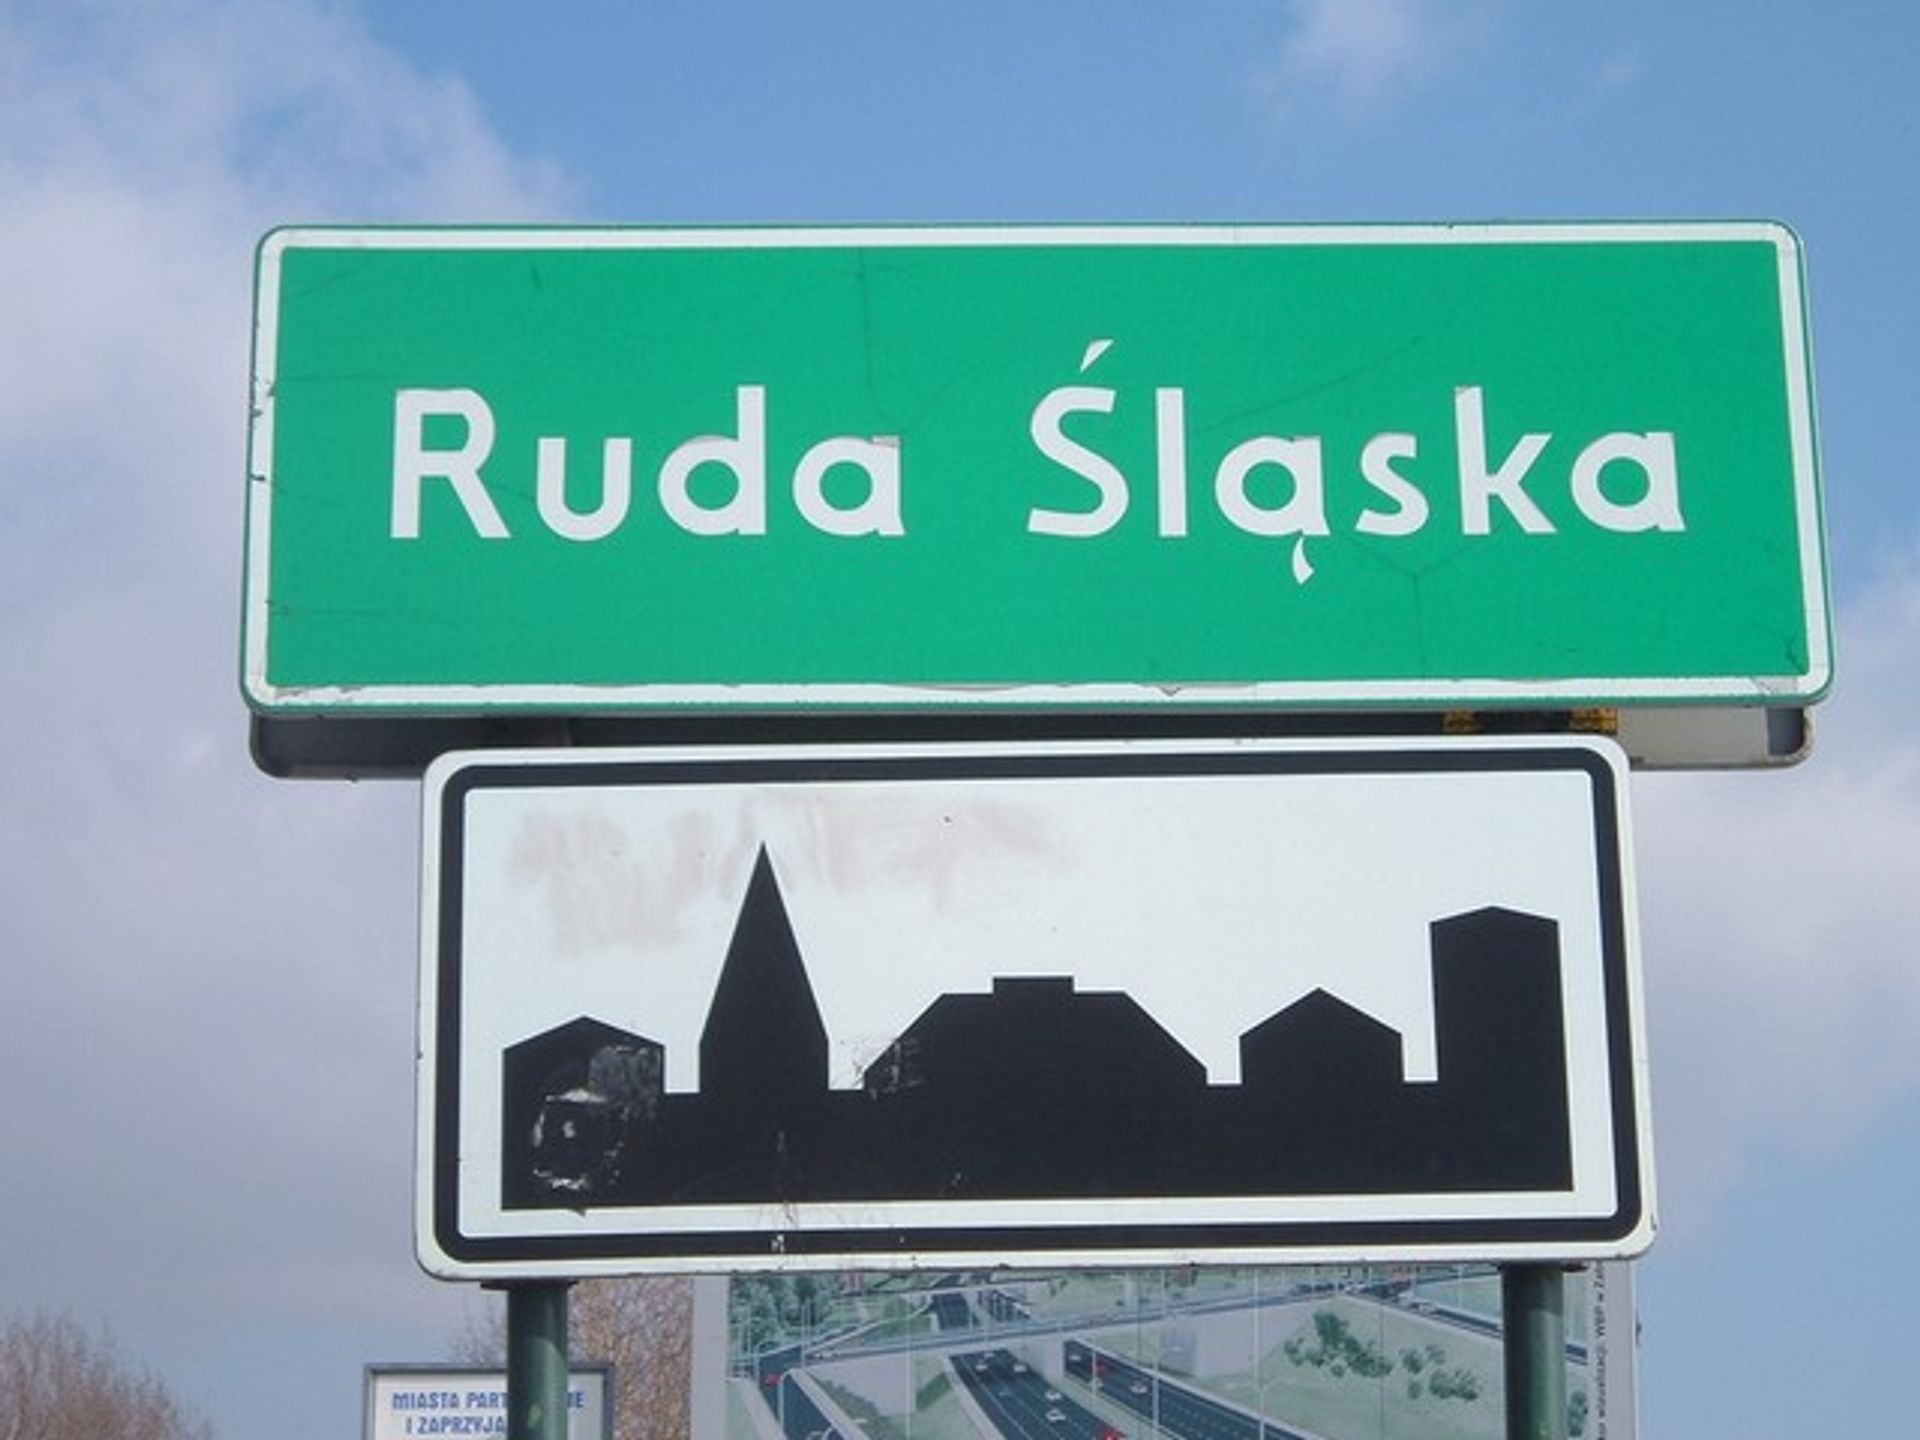  Ruda Śląska: koniec ,,łatania dziur", czas na rozwój!